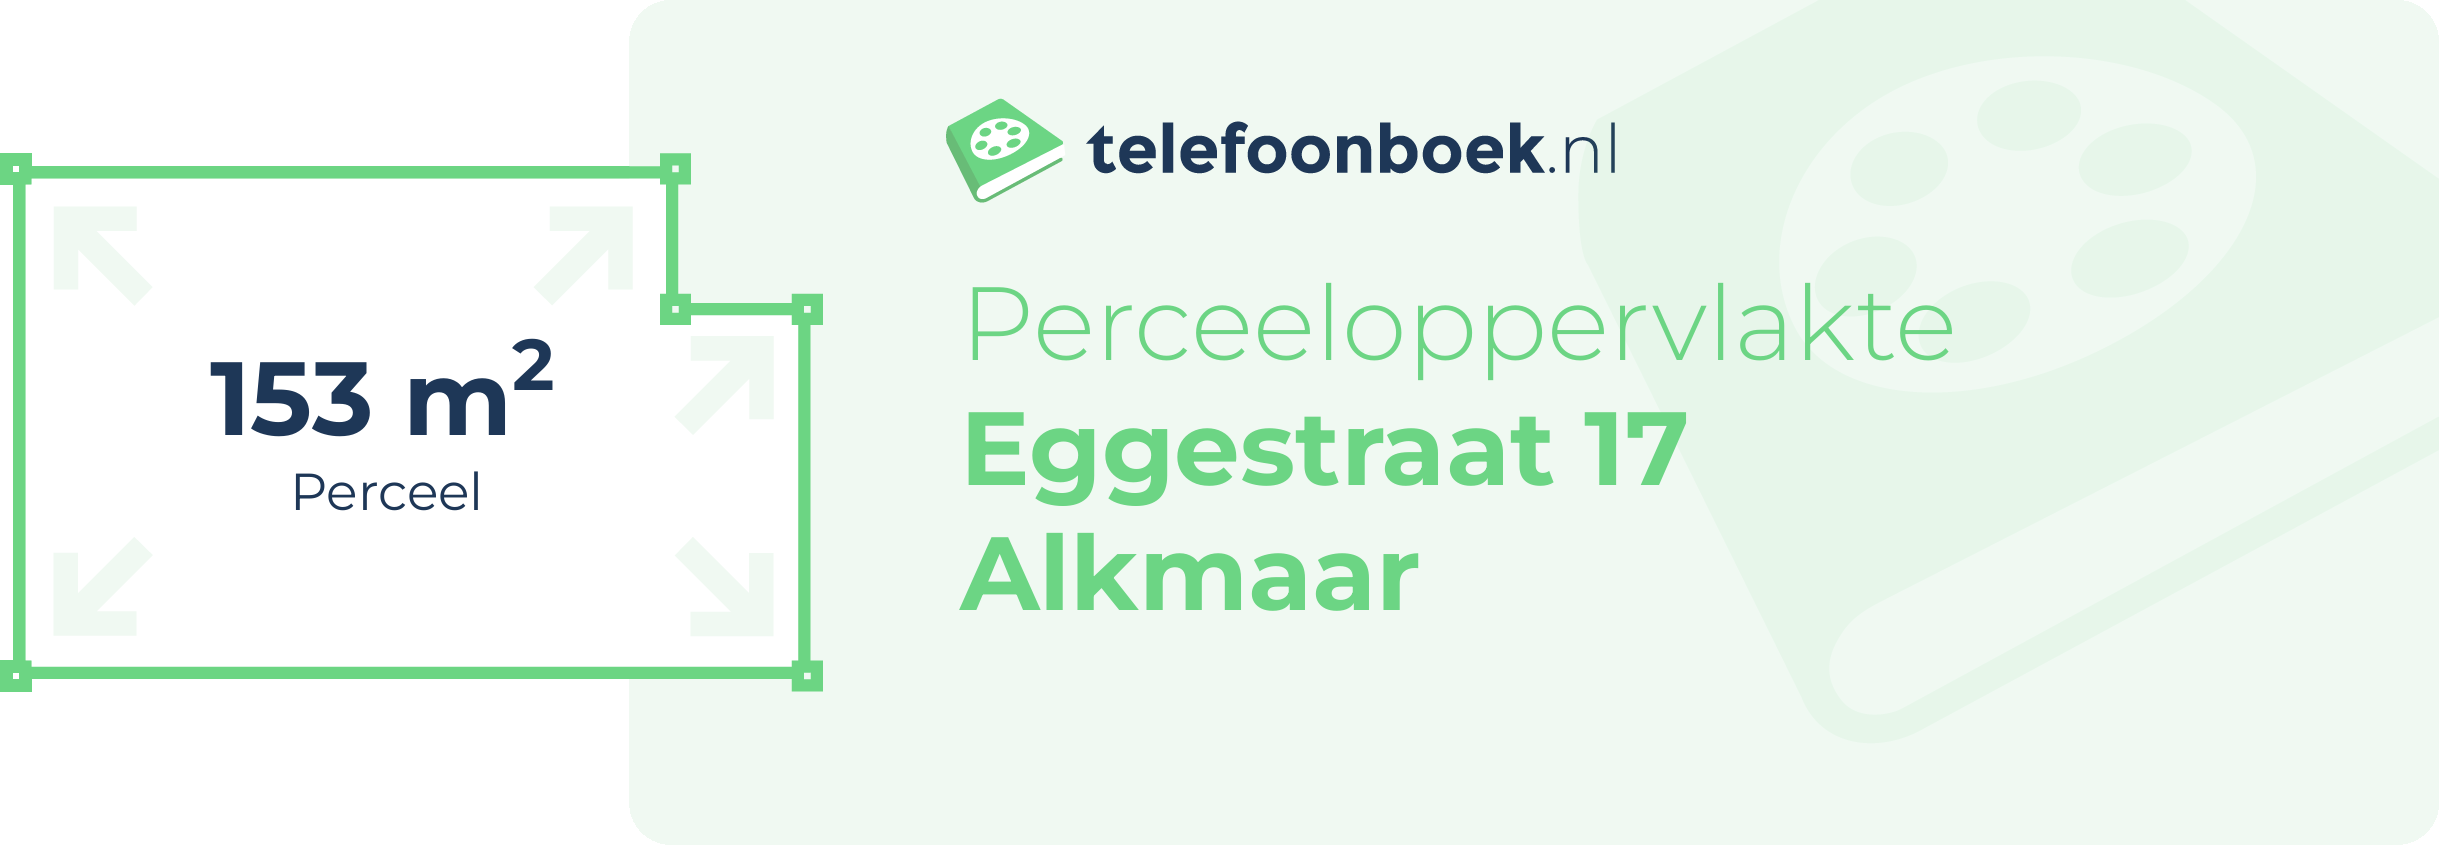 Perceeloppervlakte Eggestraat 17 Alkmaar